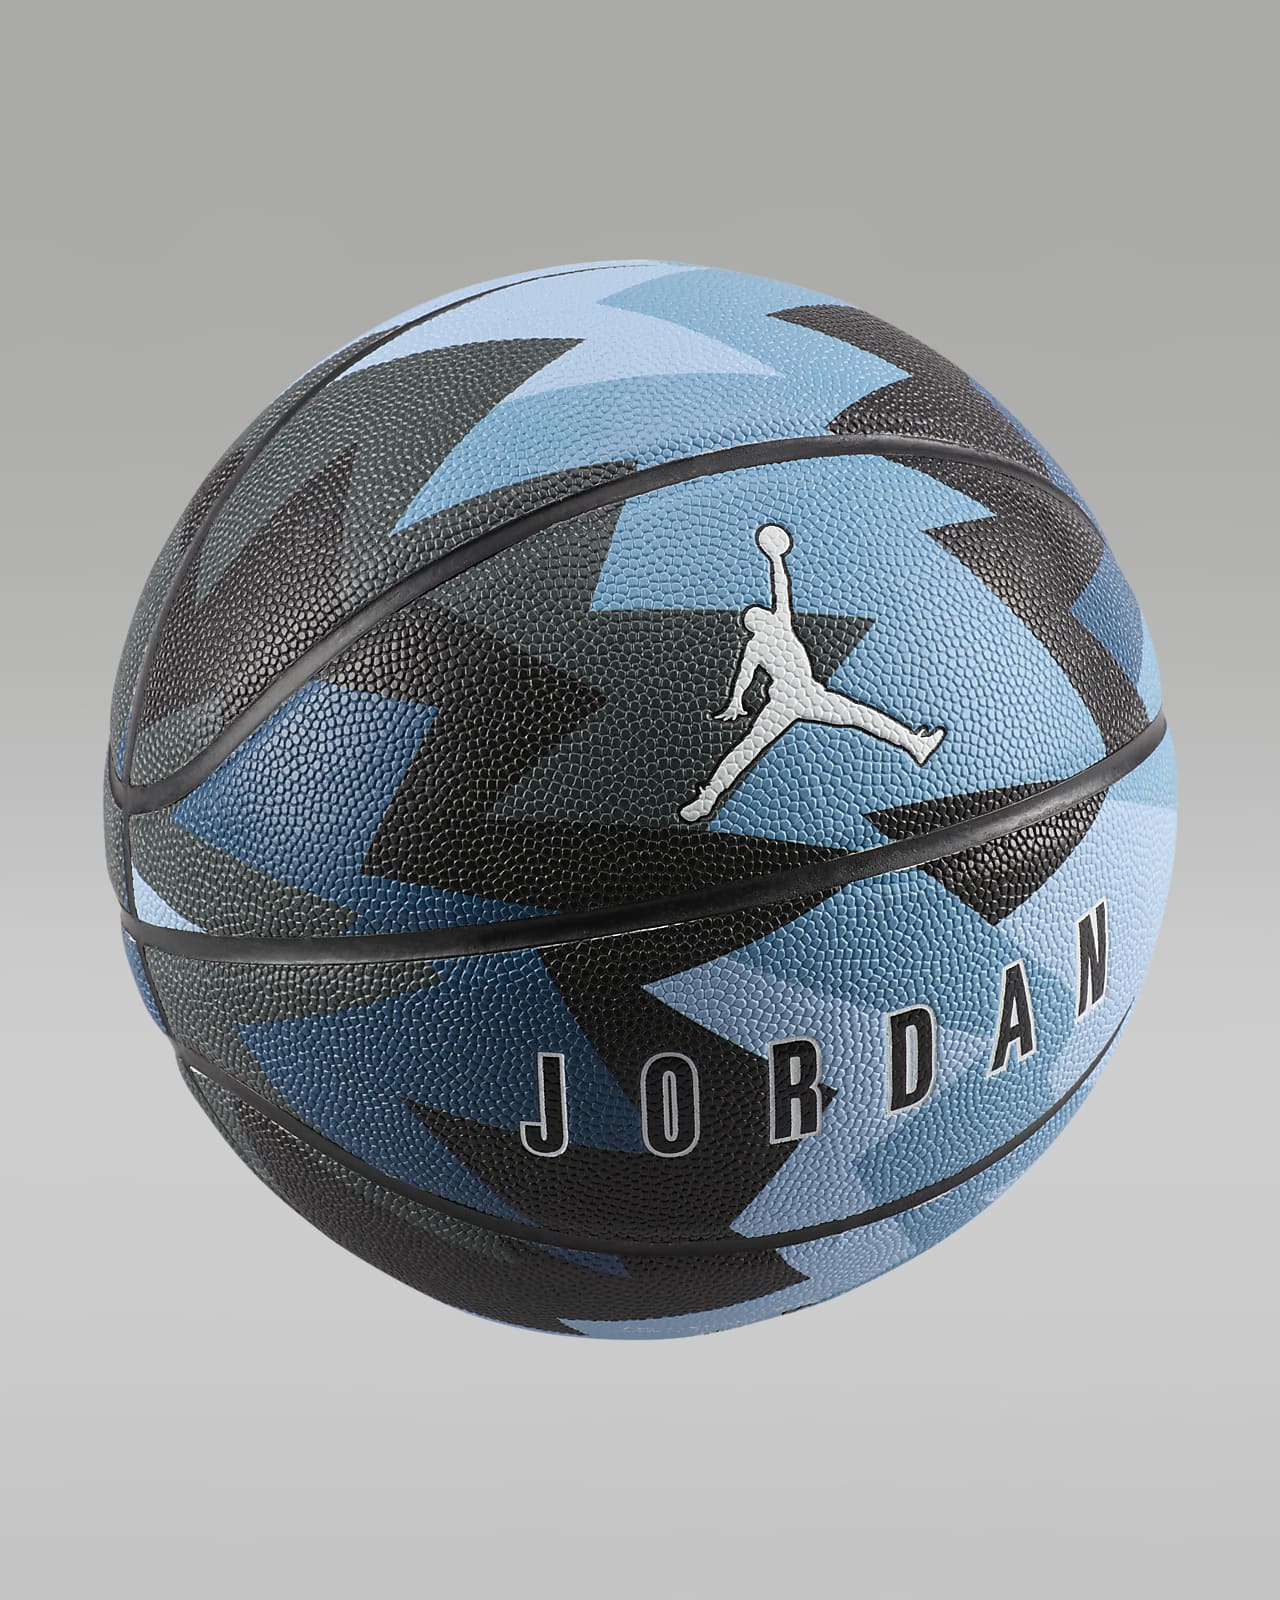 Jordan 8P Basketbal (zonder lucht)